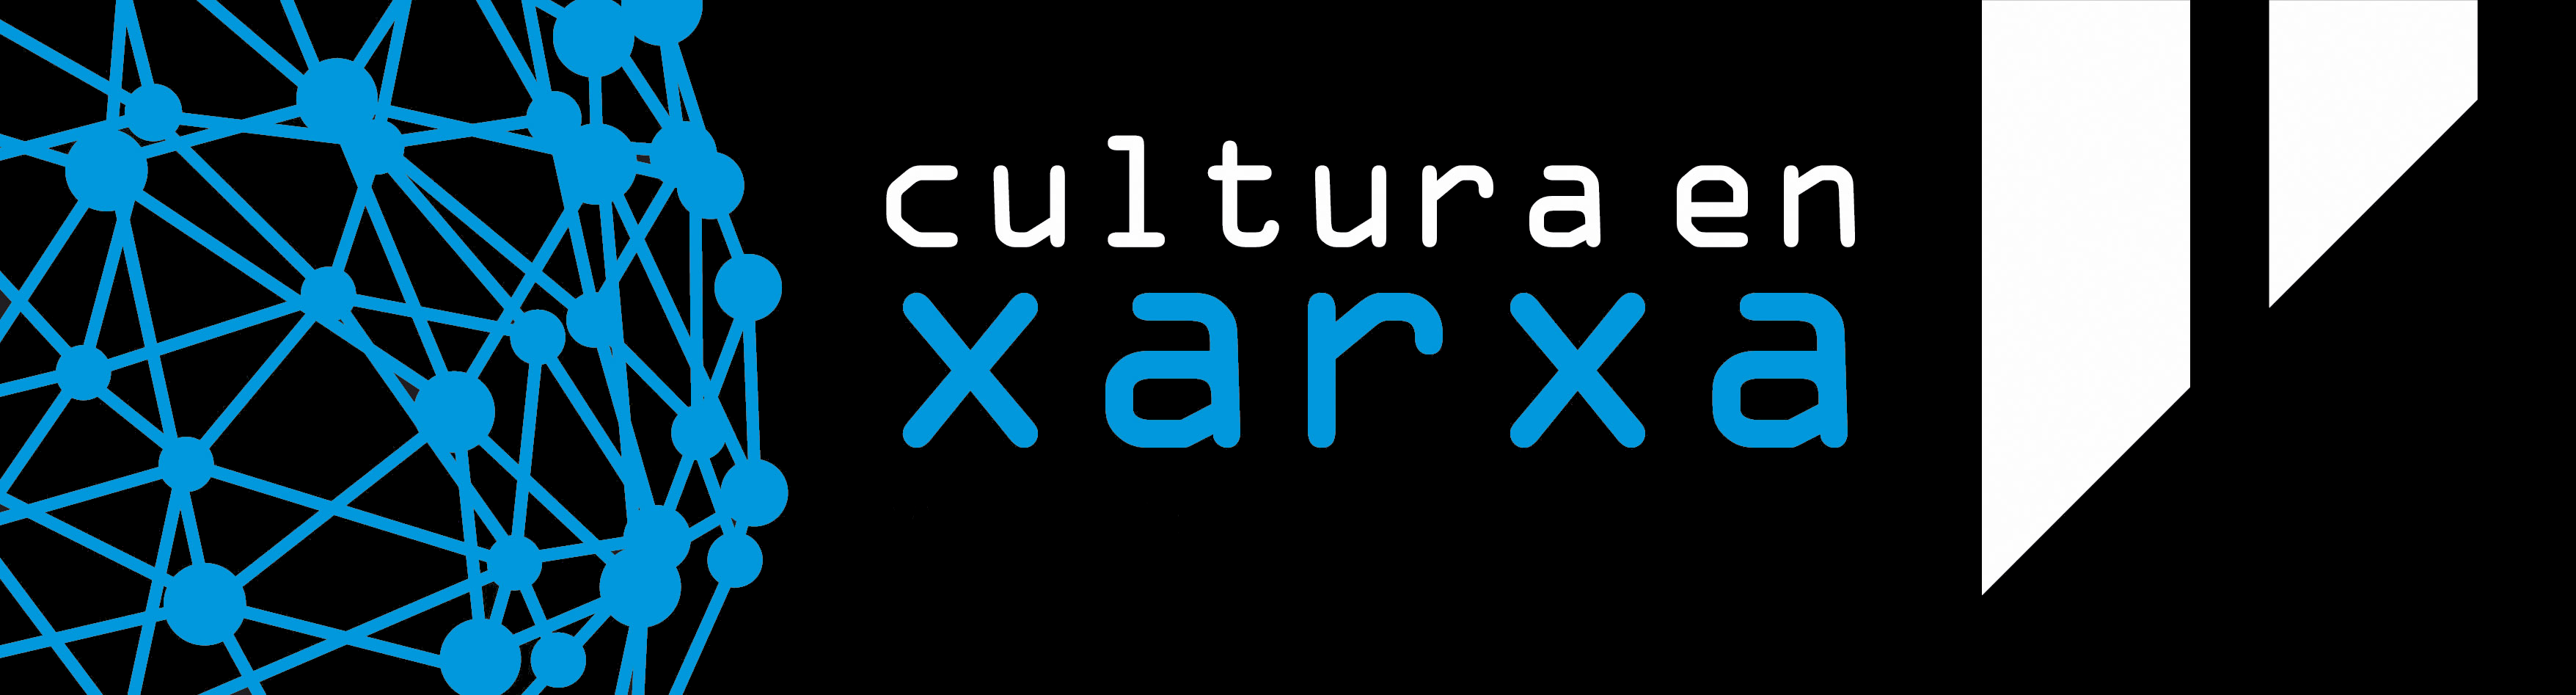 Logo cultura en xarxa